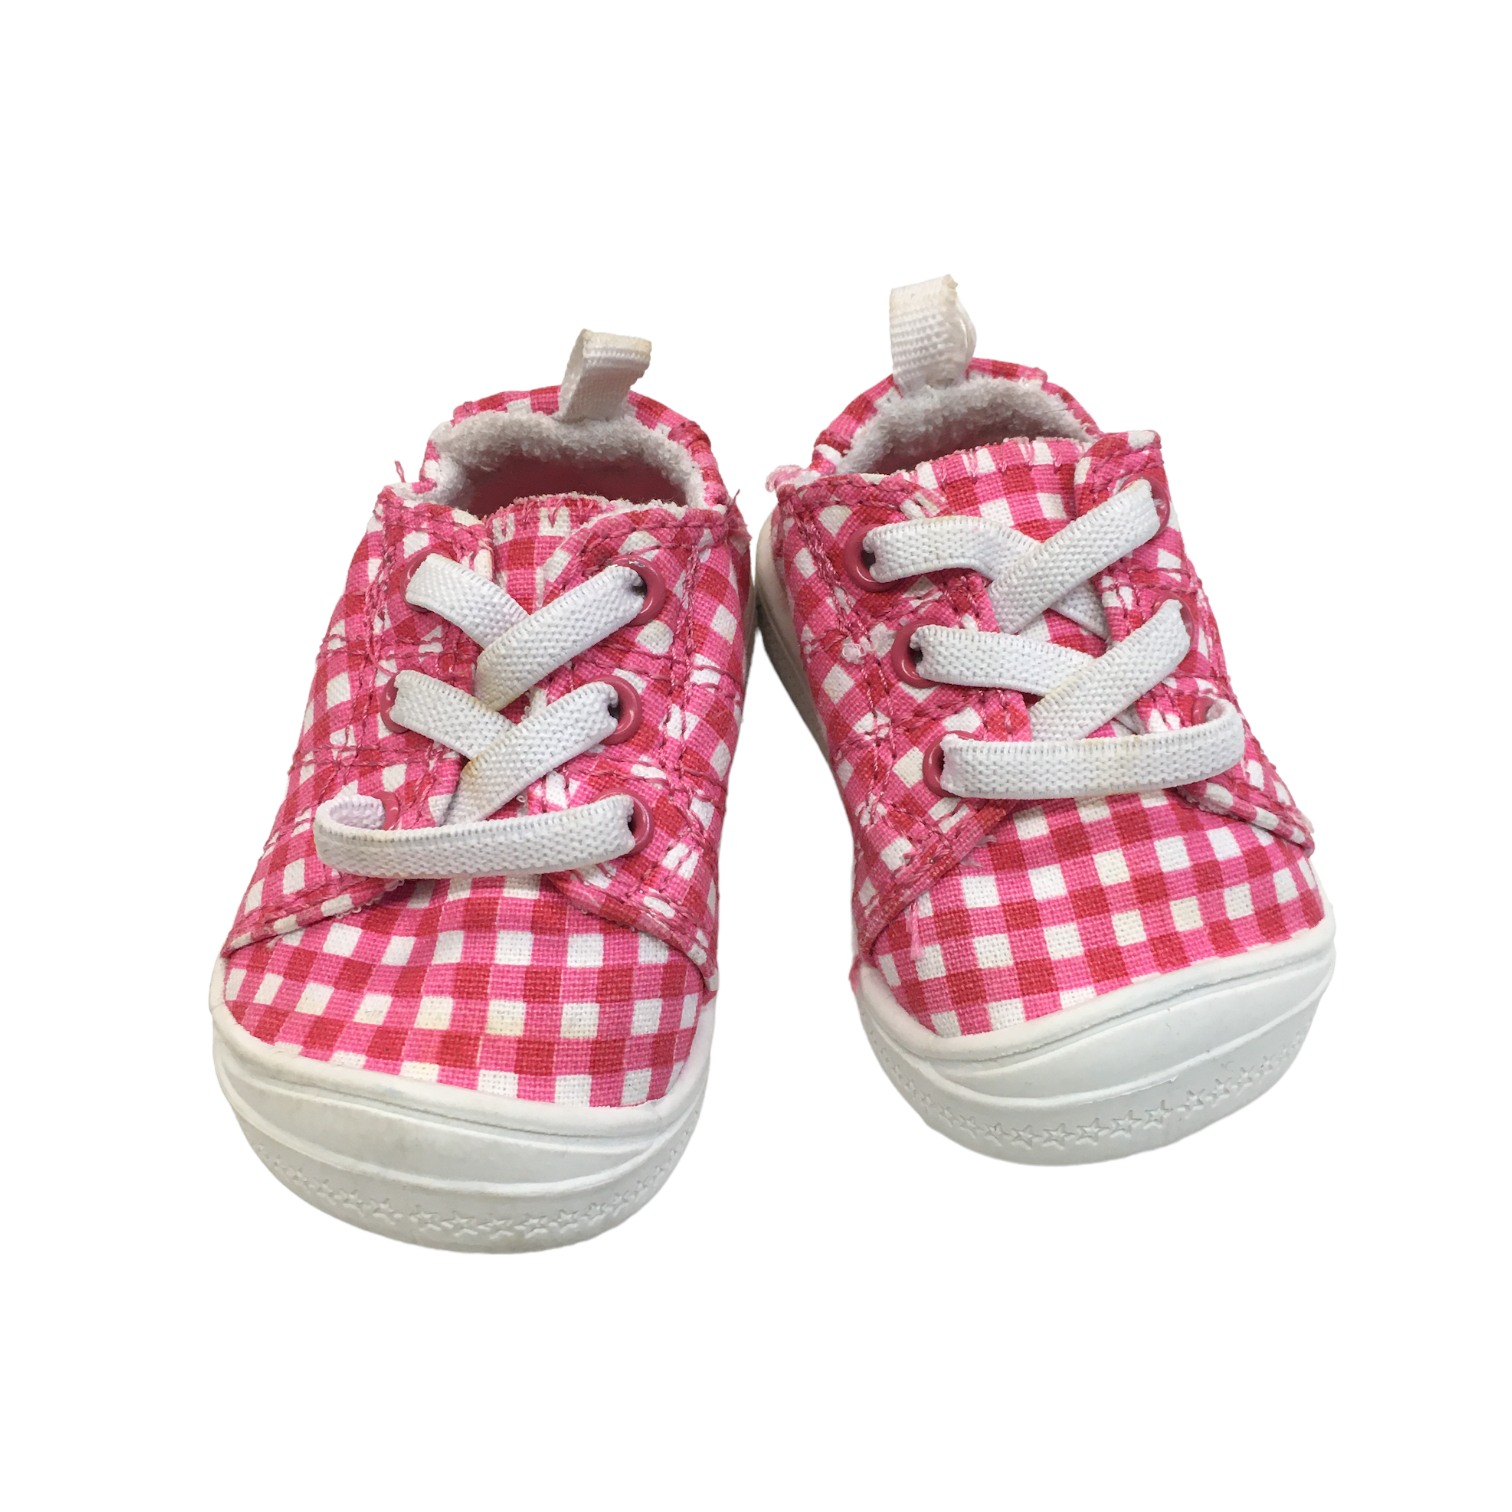 Shoes (Pink/Plaid)  Pipsqueak Resale Boutique